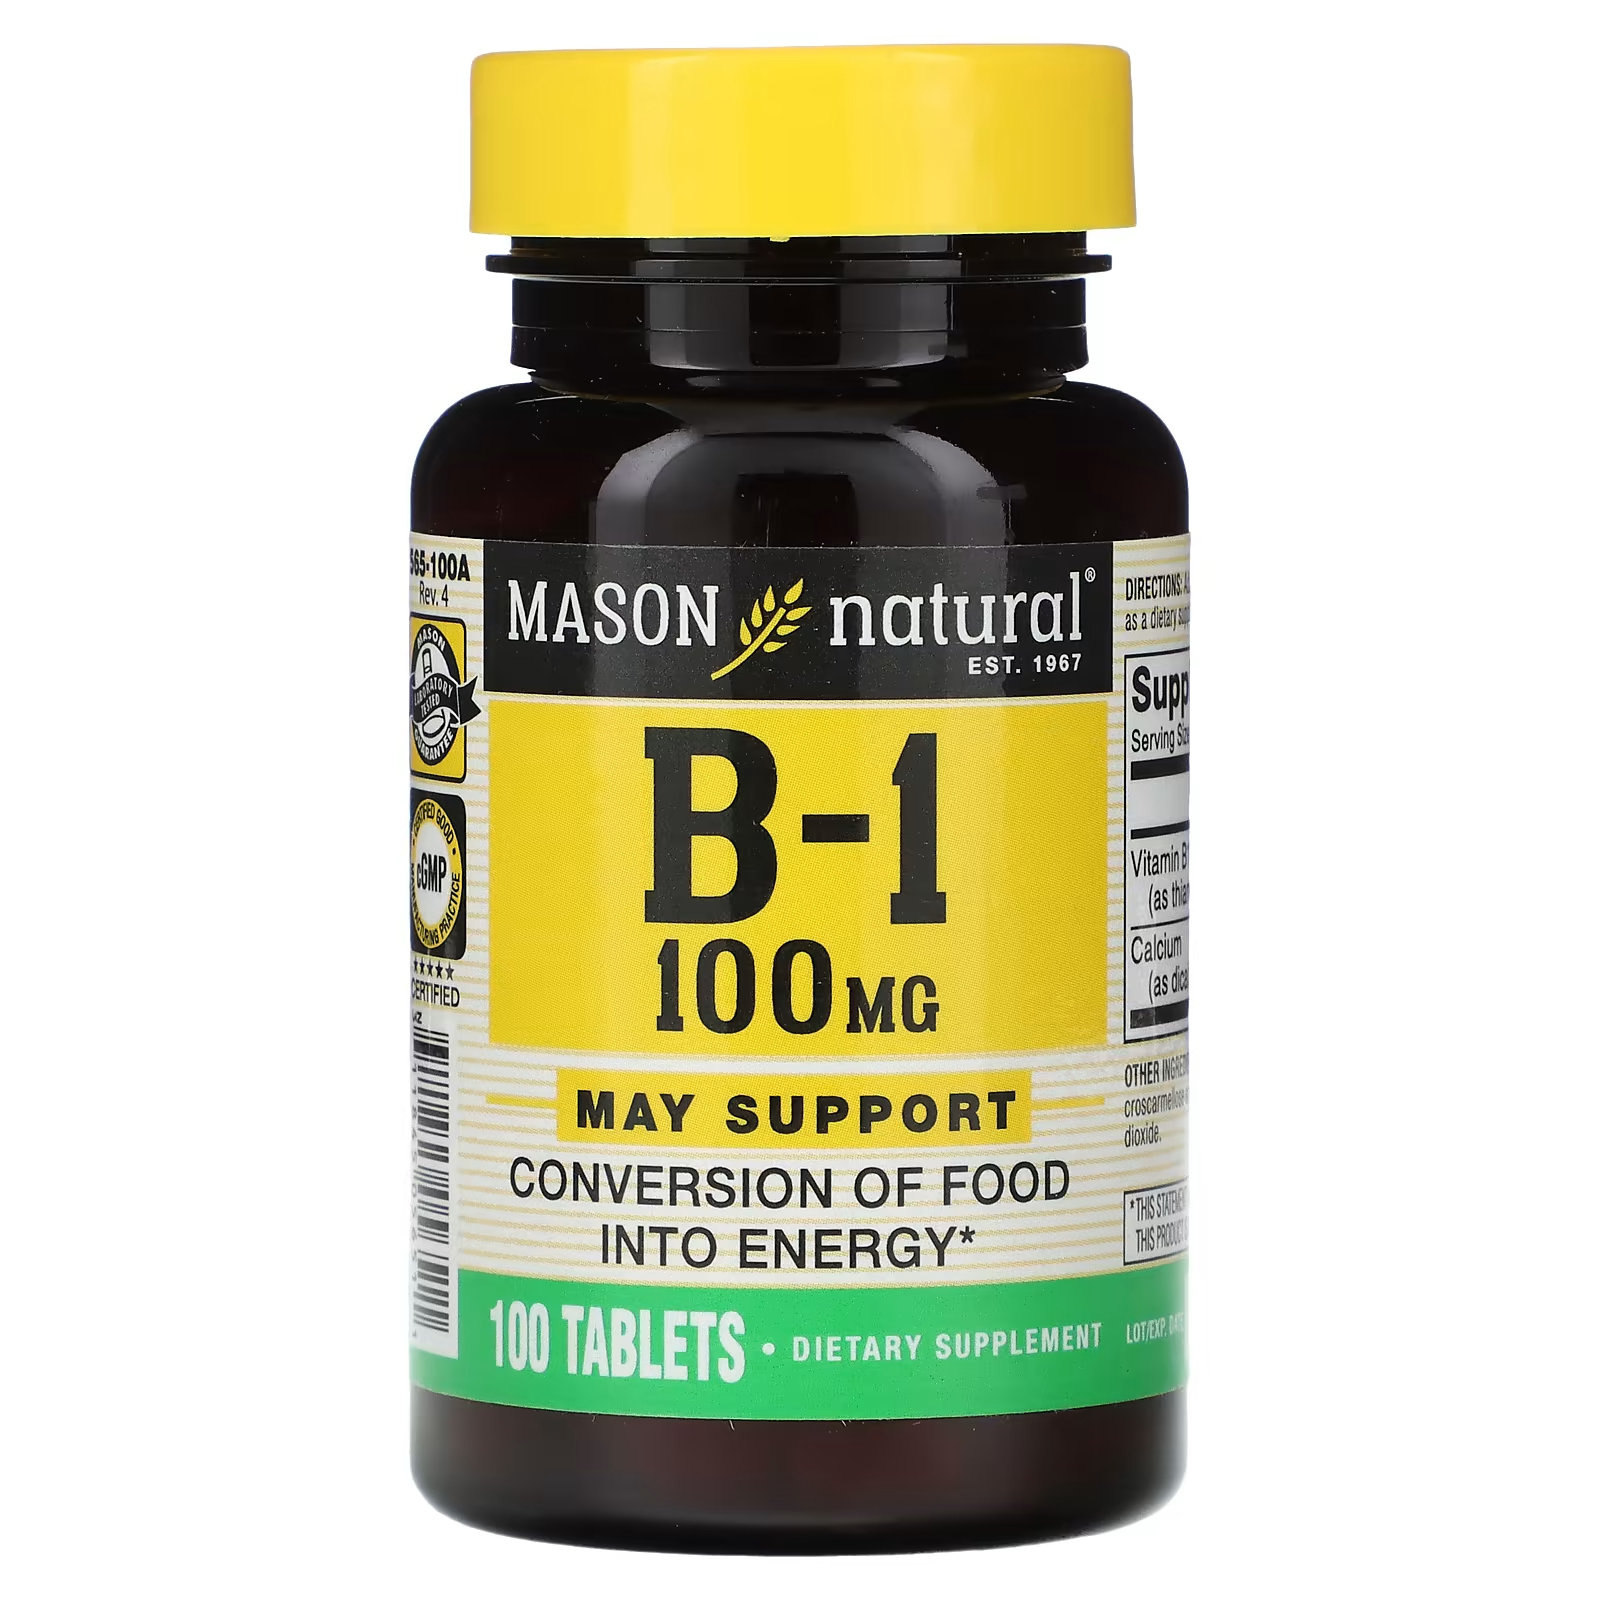 Биологически активная добавка Mason Natural B-1, 100 мг., 100 таблеток биологически активная добавка mason natural витамин b6 500 мг 60 таблеток